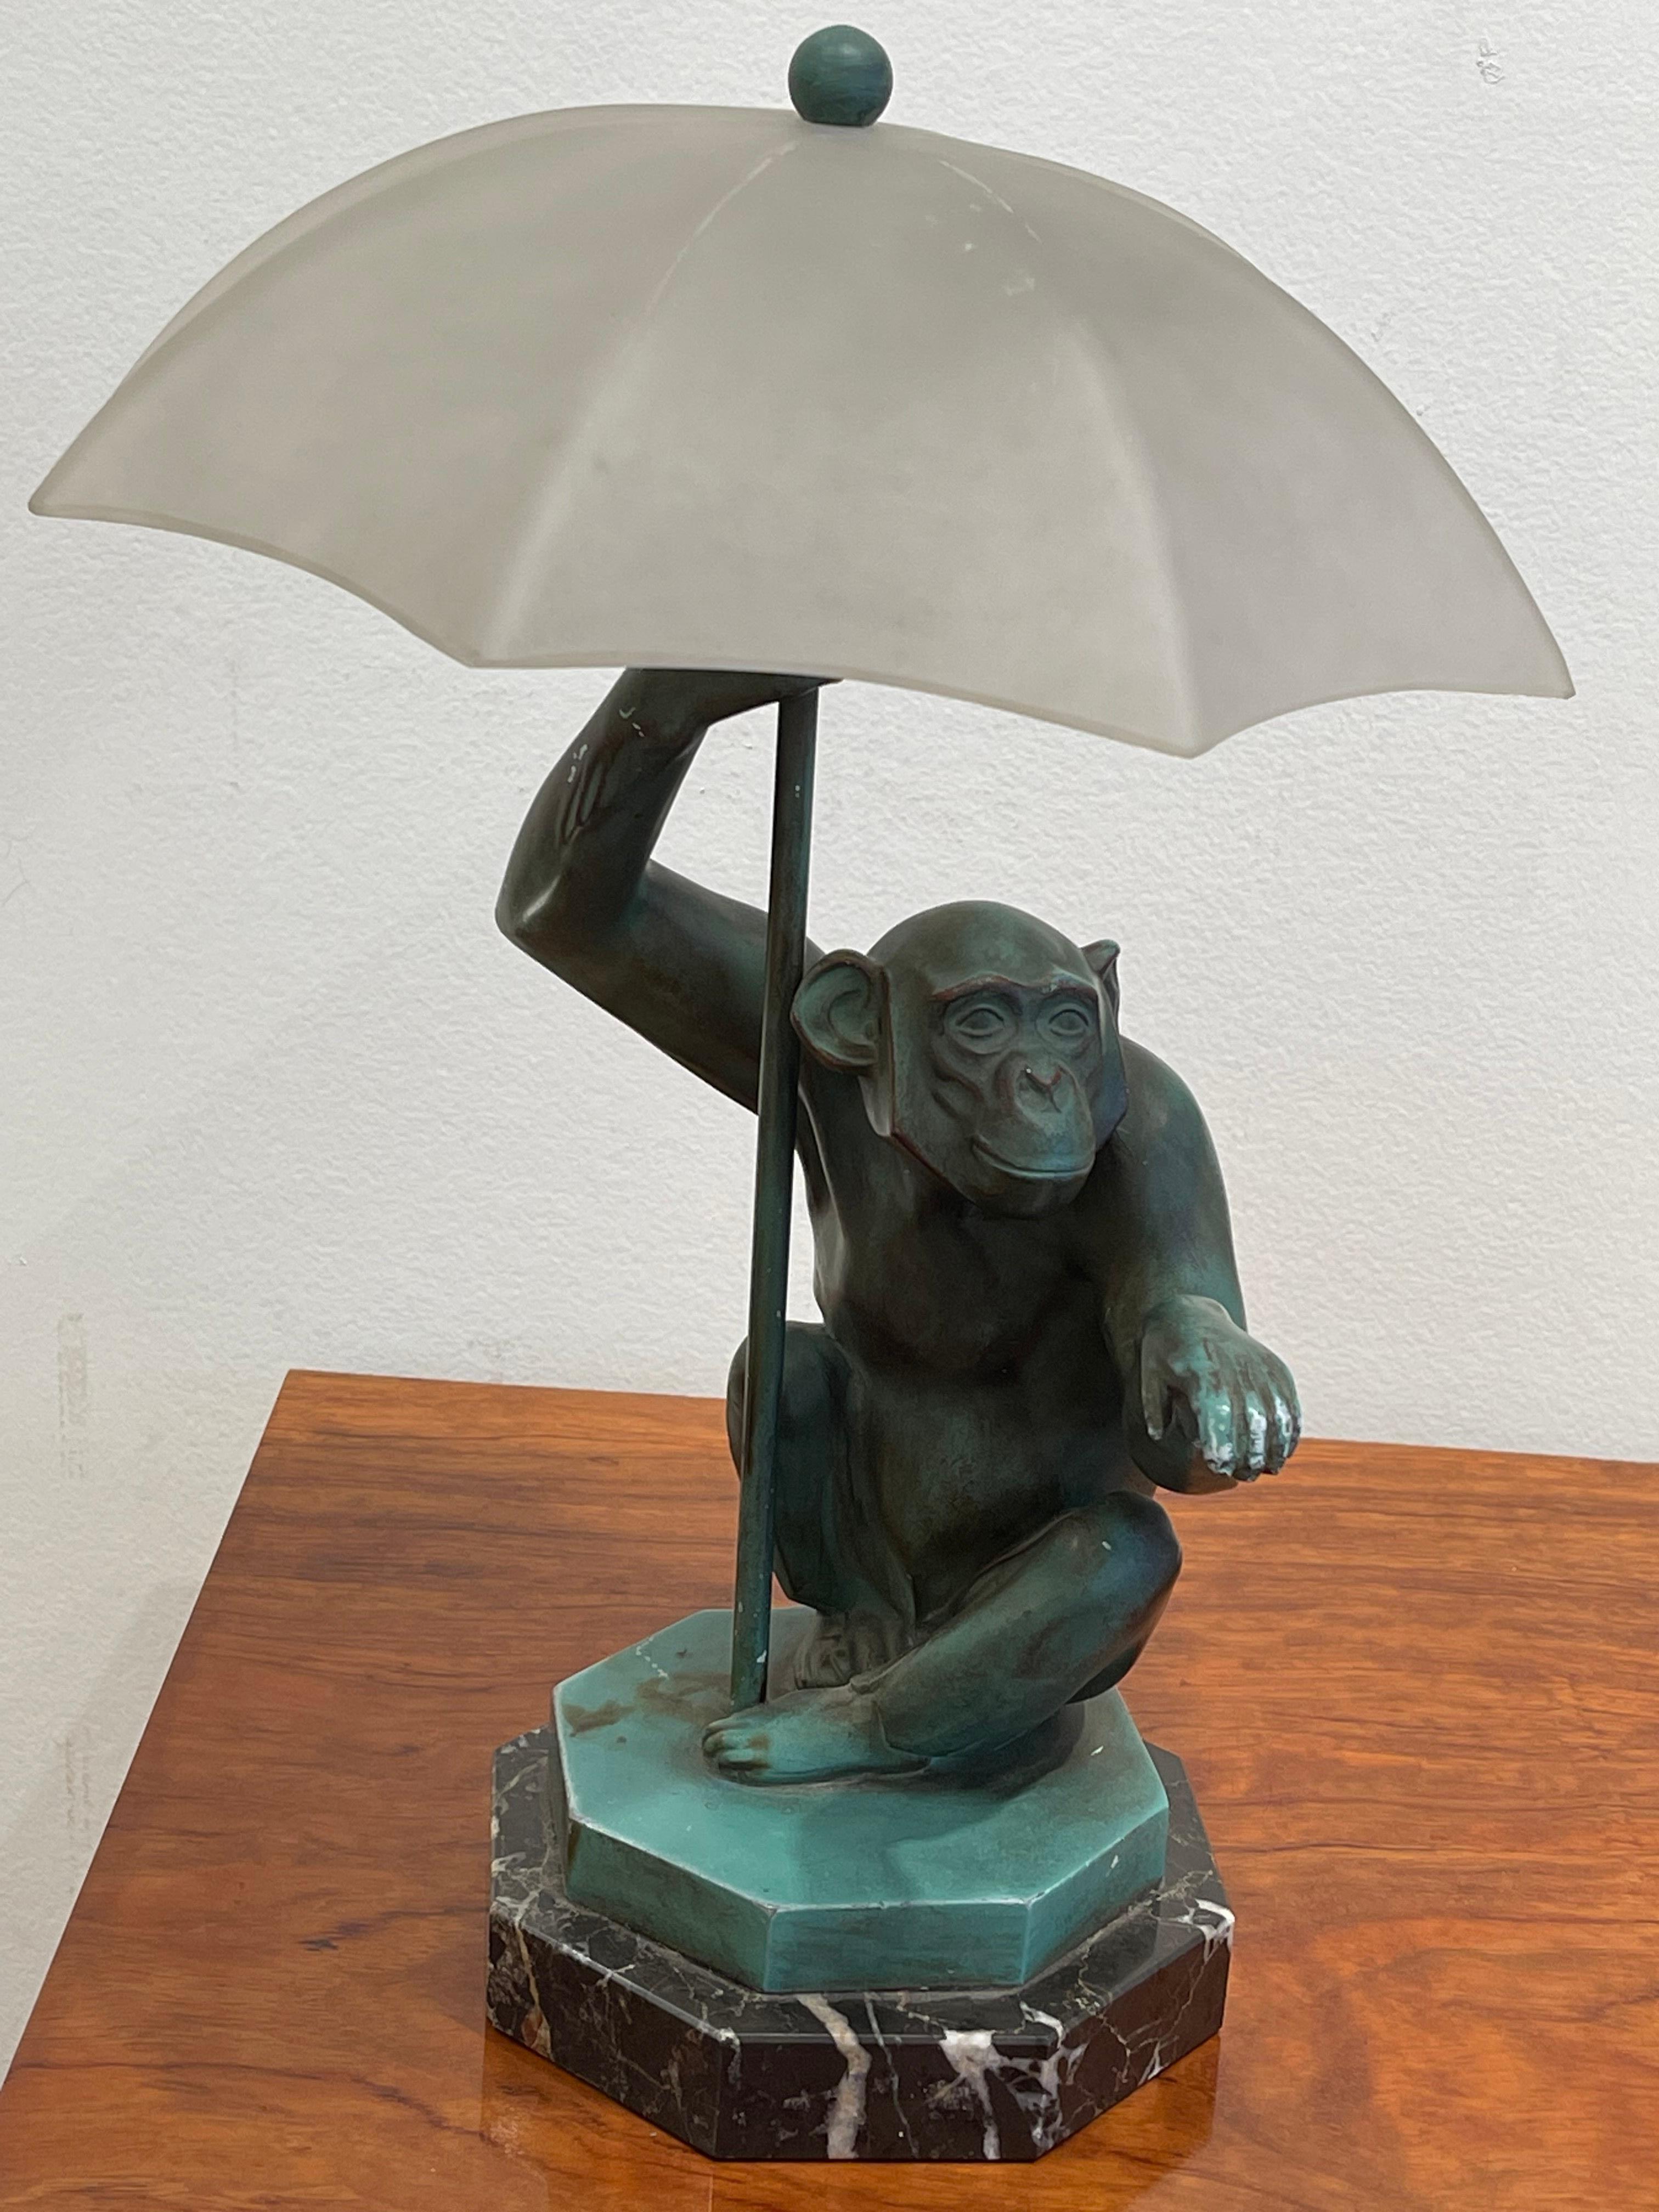 Exceptionnelle sculpture/lampe Art Déco de Max Le Verrier (1891-1973) représentant un singe sous un parapluie. Elle s'intitule La Pluie ou Le Singe au Parapluie. Modèle créé vers 1925-1927 et récompensé au Salon des Humoristes à Paris en 1927.
Lampe